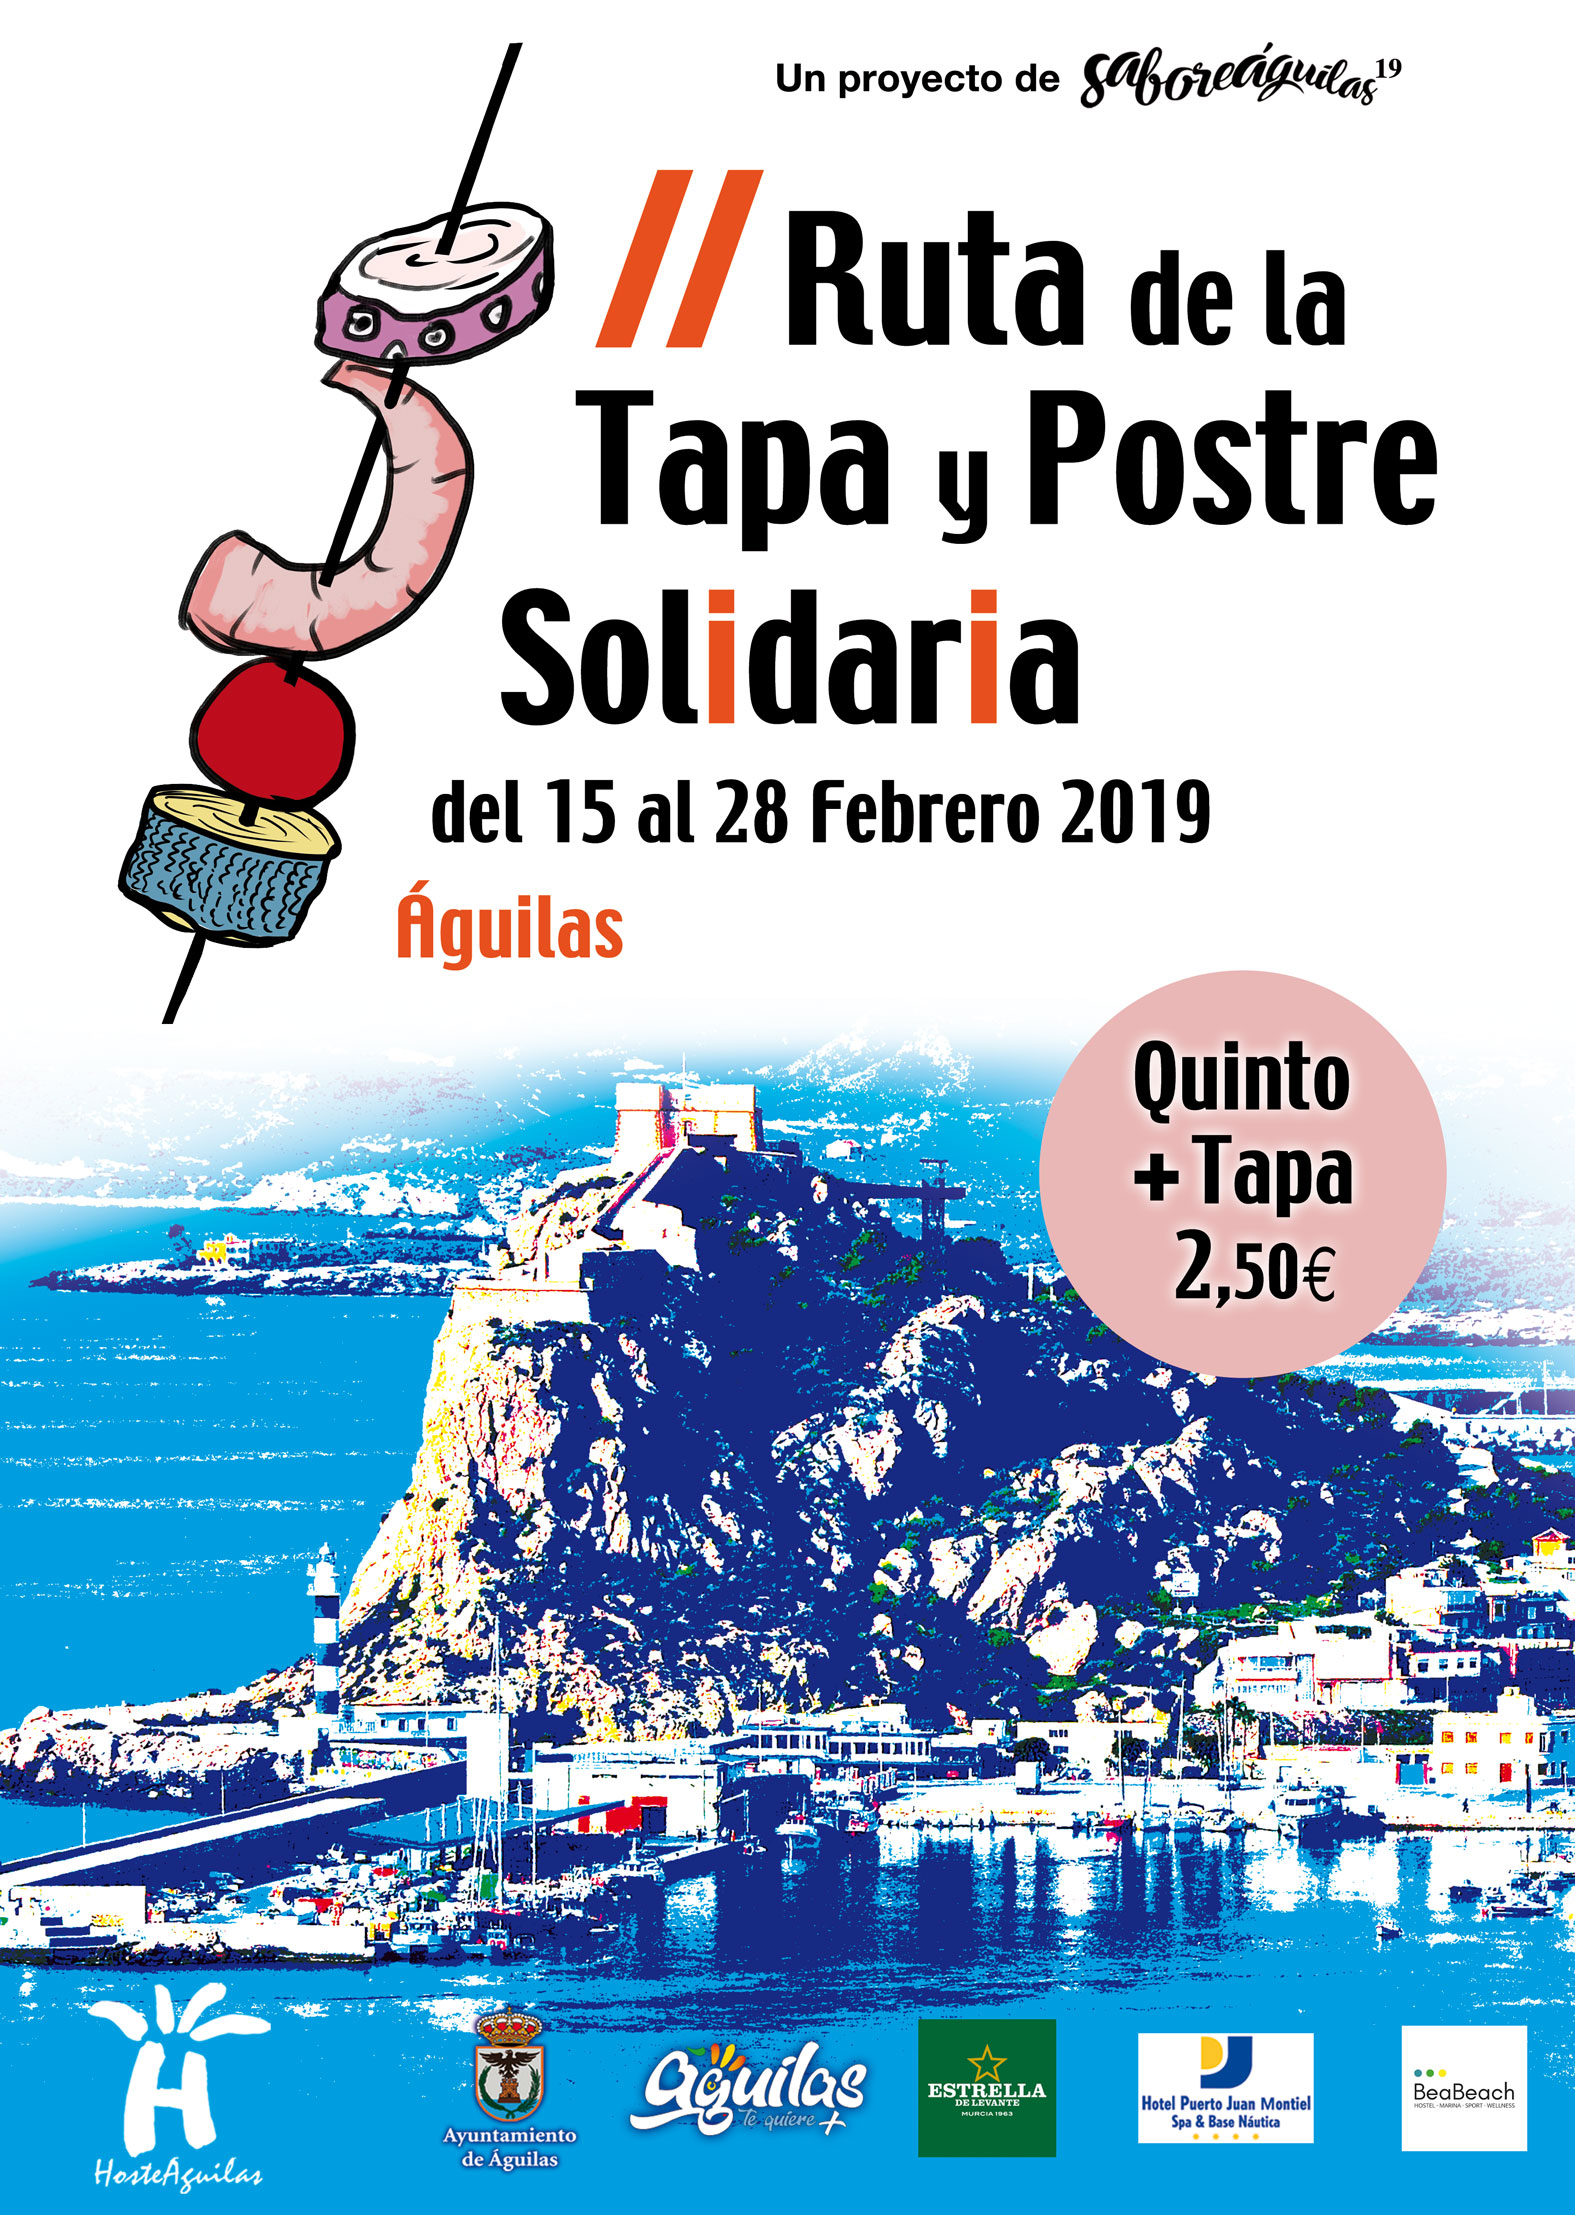  Información Ruta de la Tapa y Postre Solidaria 2019.